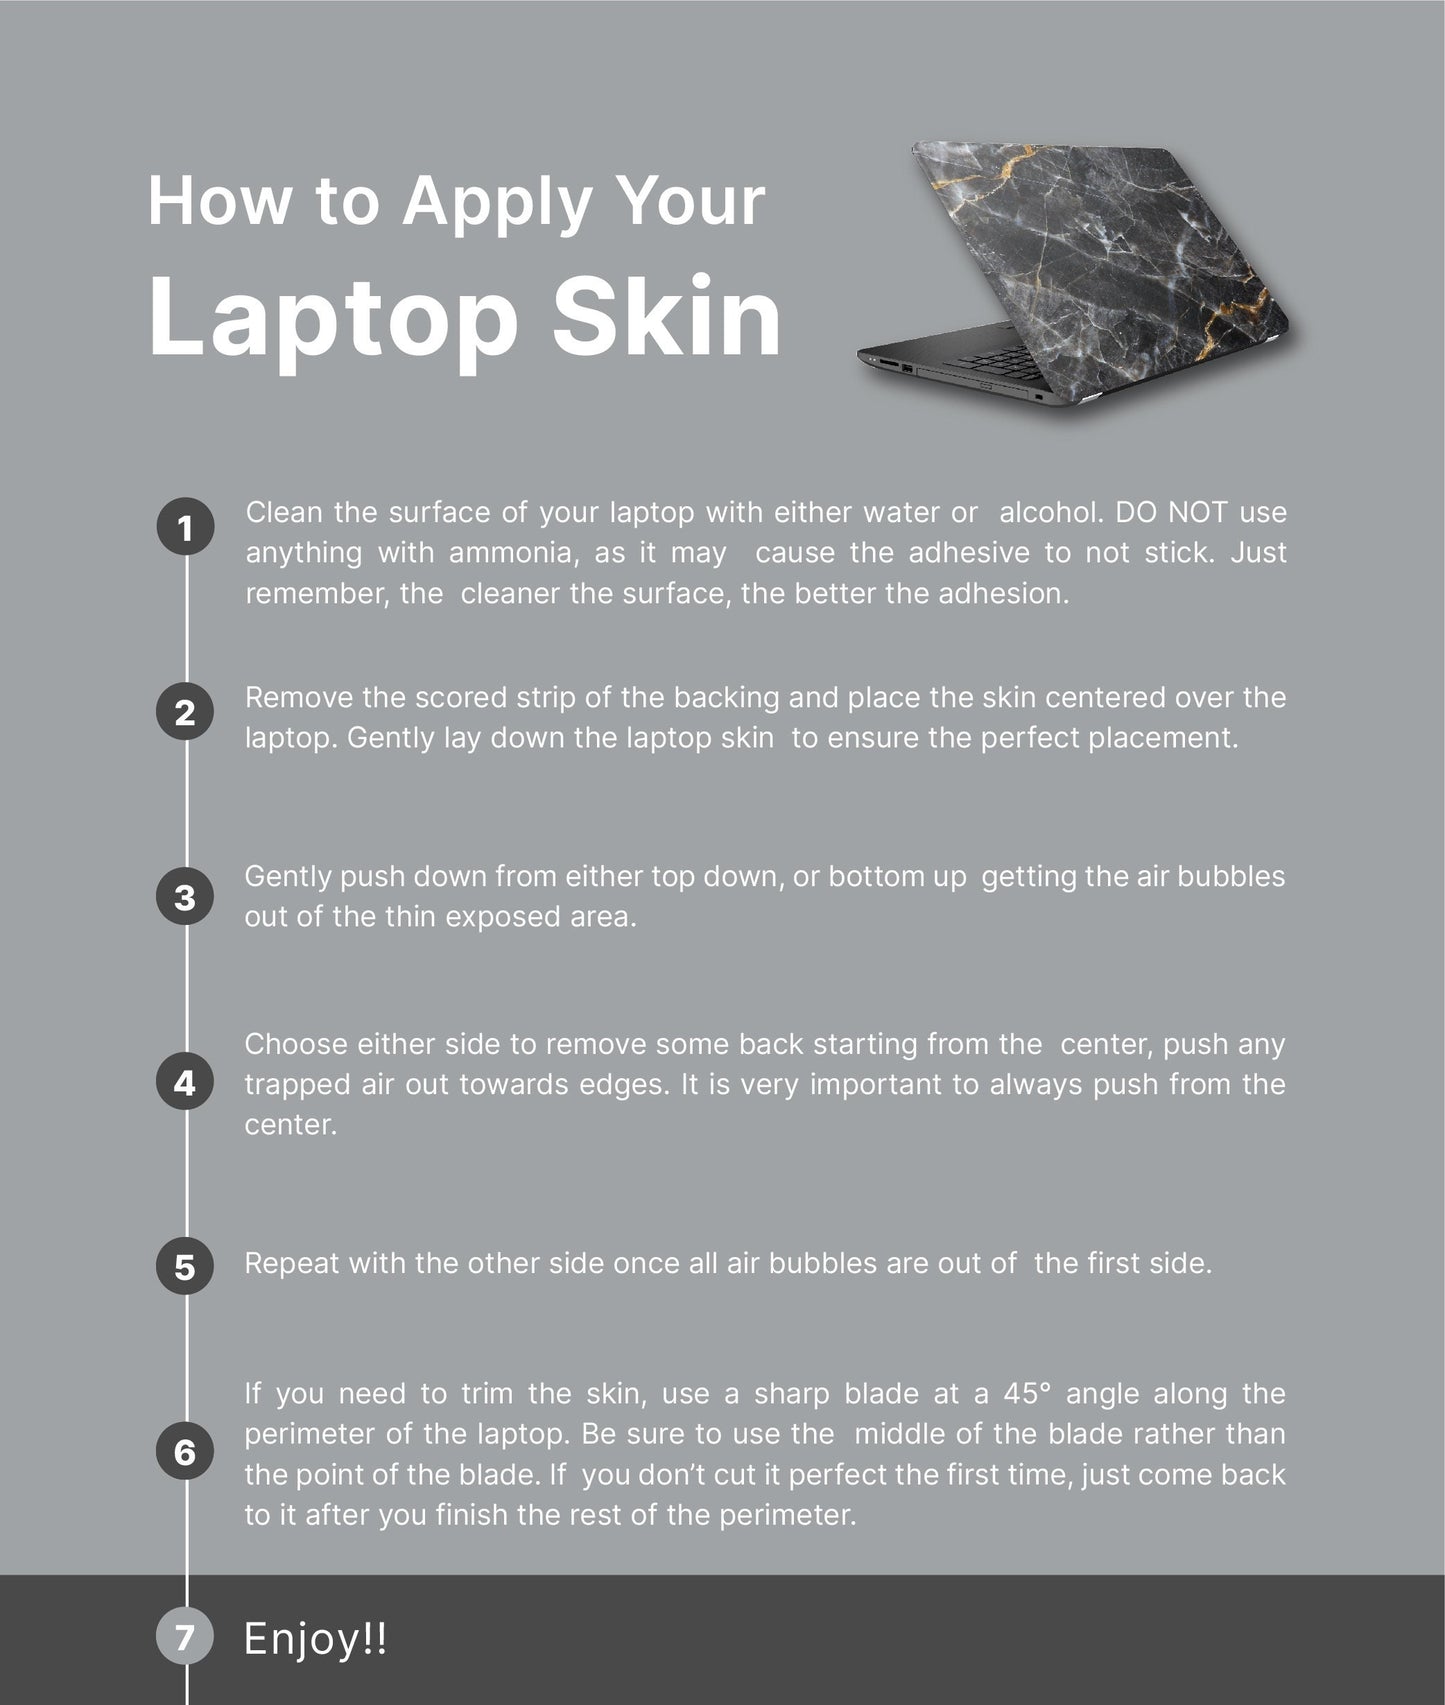 Purple Mountains Laptop Skin, Laptop Cover, Laptop Skins, Removable Laptop Skins, Laptop Decal, Customized Laptop Skin, Laptop Stickers 335